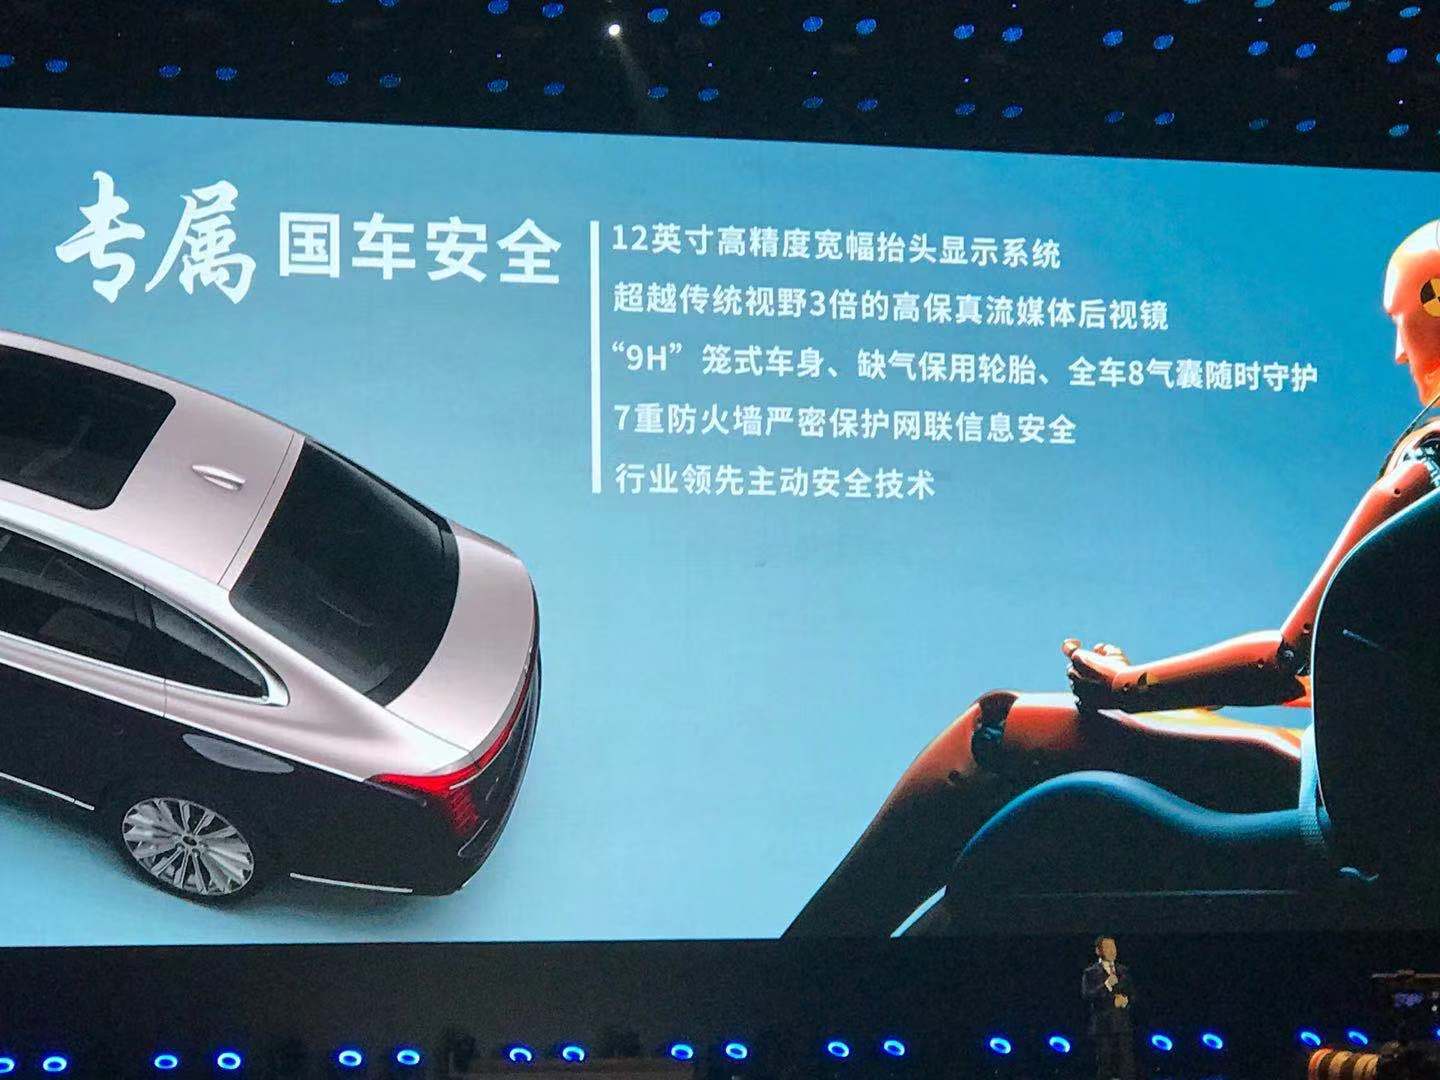 中国品牌唯一“V6+纵置后驱”，红旗H9“打卡”2020